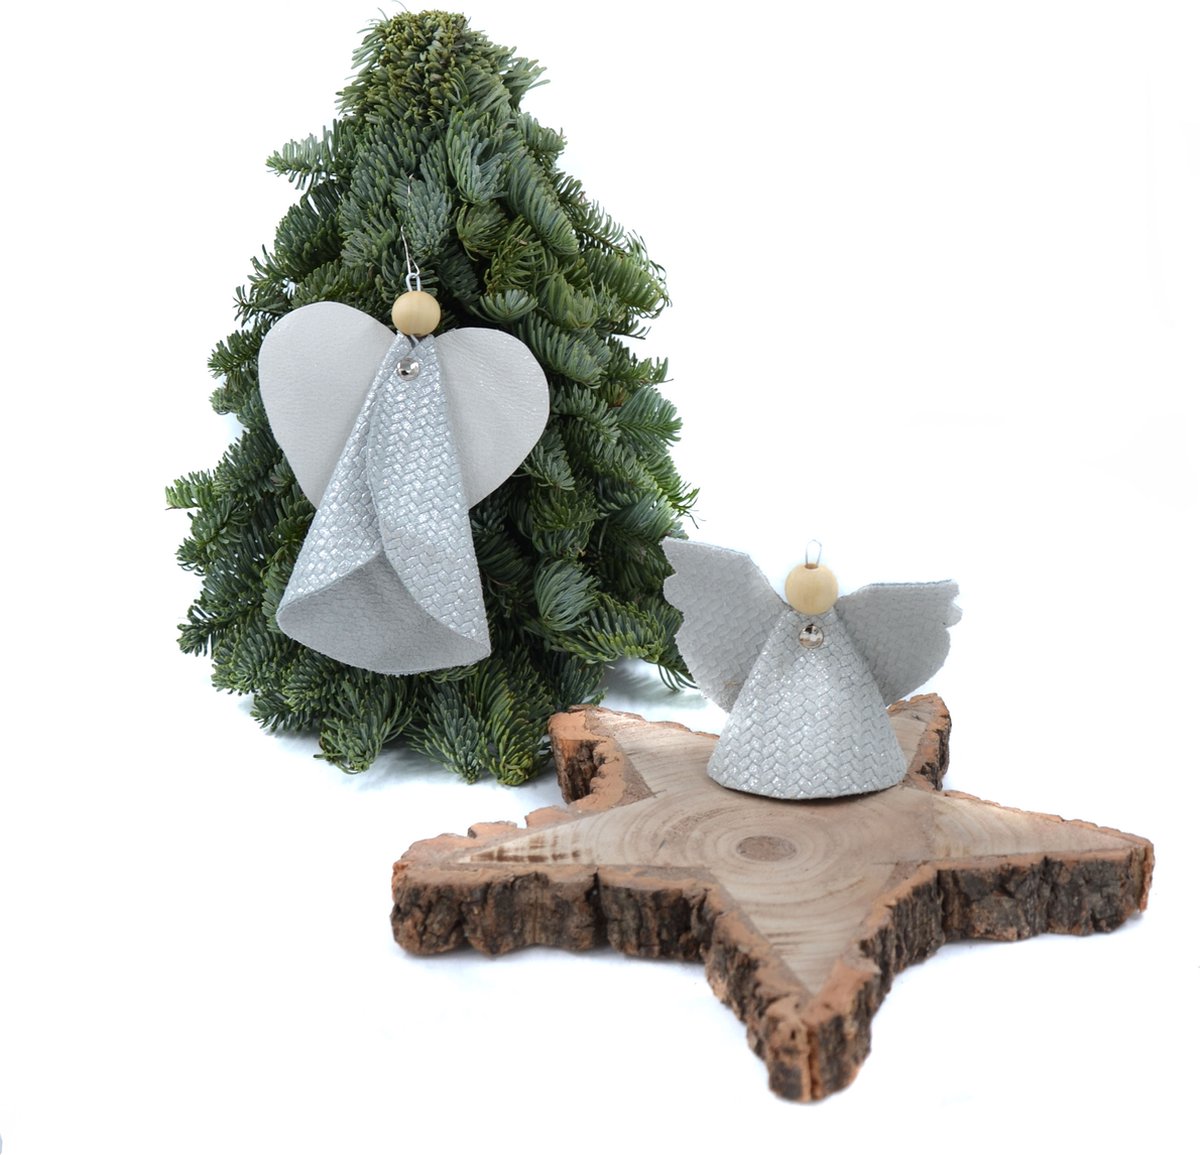 Skinsbynature Kerst engel van leer een set van 2 stuks, kunstwerkje voor in je kerstboom